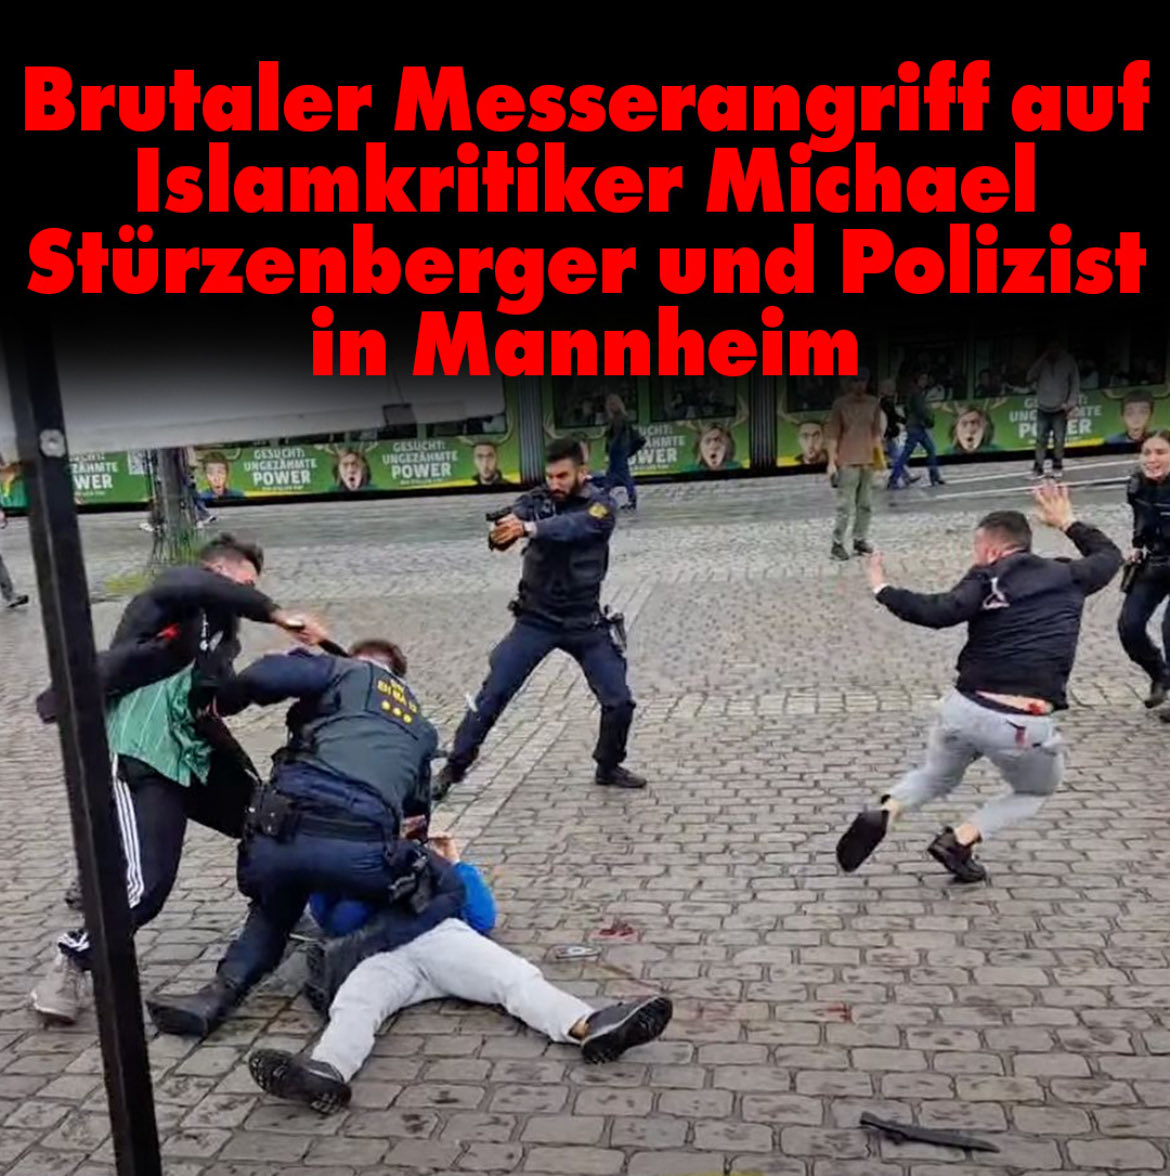 EILMELDUNG: Messerangriff auf Islam-Kritiker Michael Stürzenberger.

Was ist nur mit unserem Land passiert?

Ich wünsche den Opfern der Messerattacke eine schnelle und vollständige Genesung.

nius.de/common/brutale…